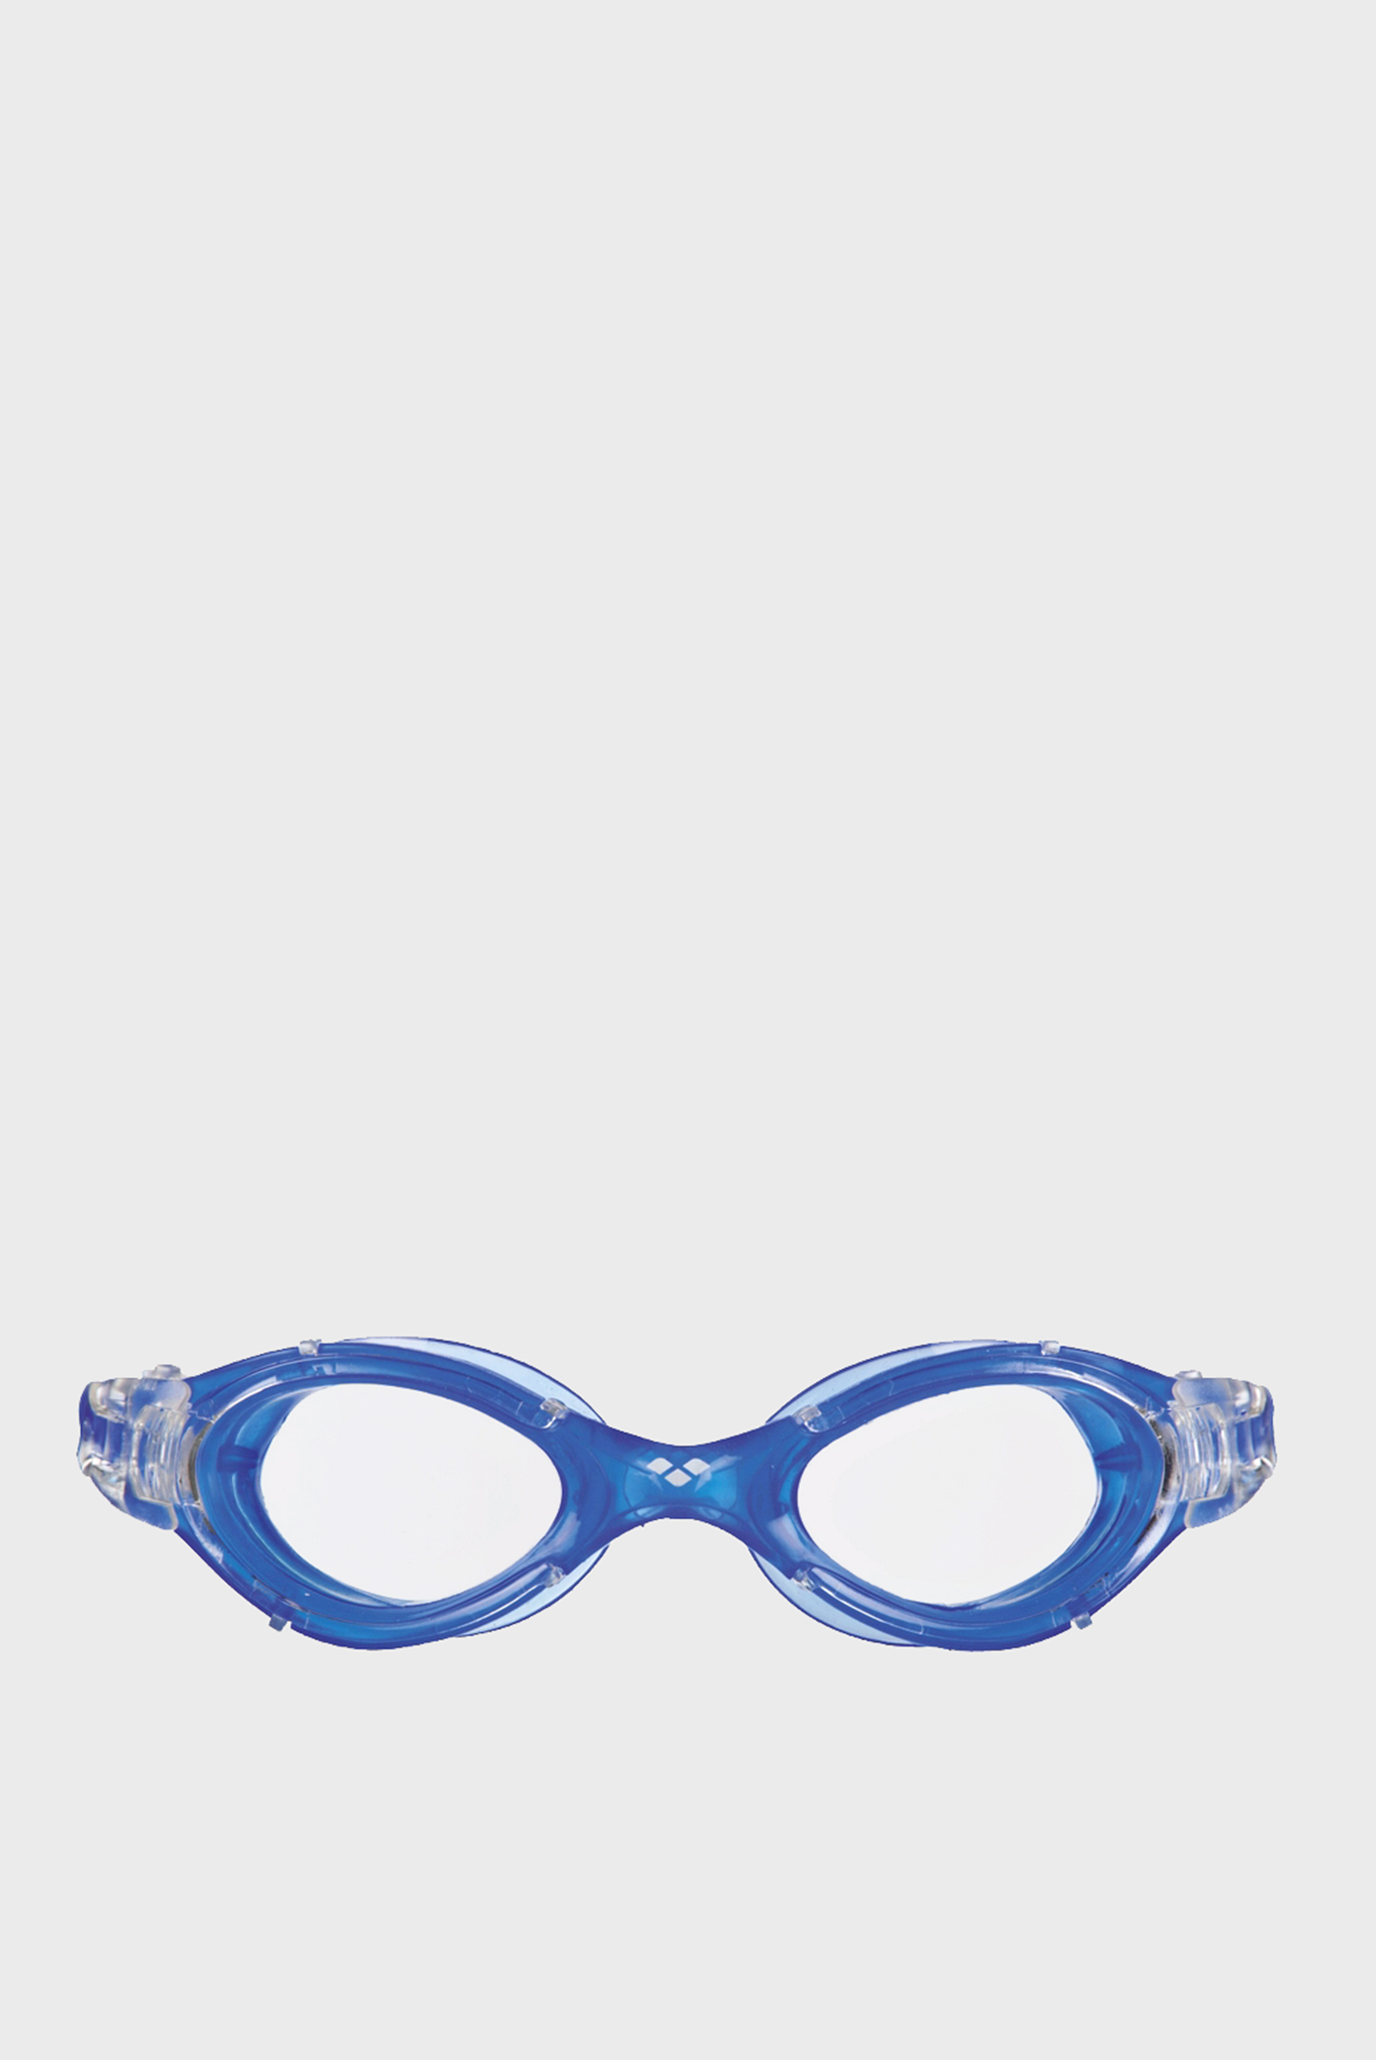 Сині окуляри для плавання NIMESIS CRYSTAL MEDIUM 1